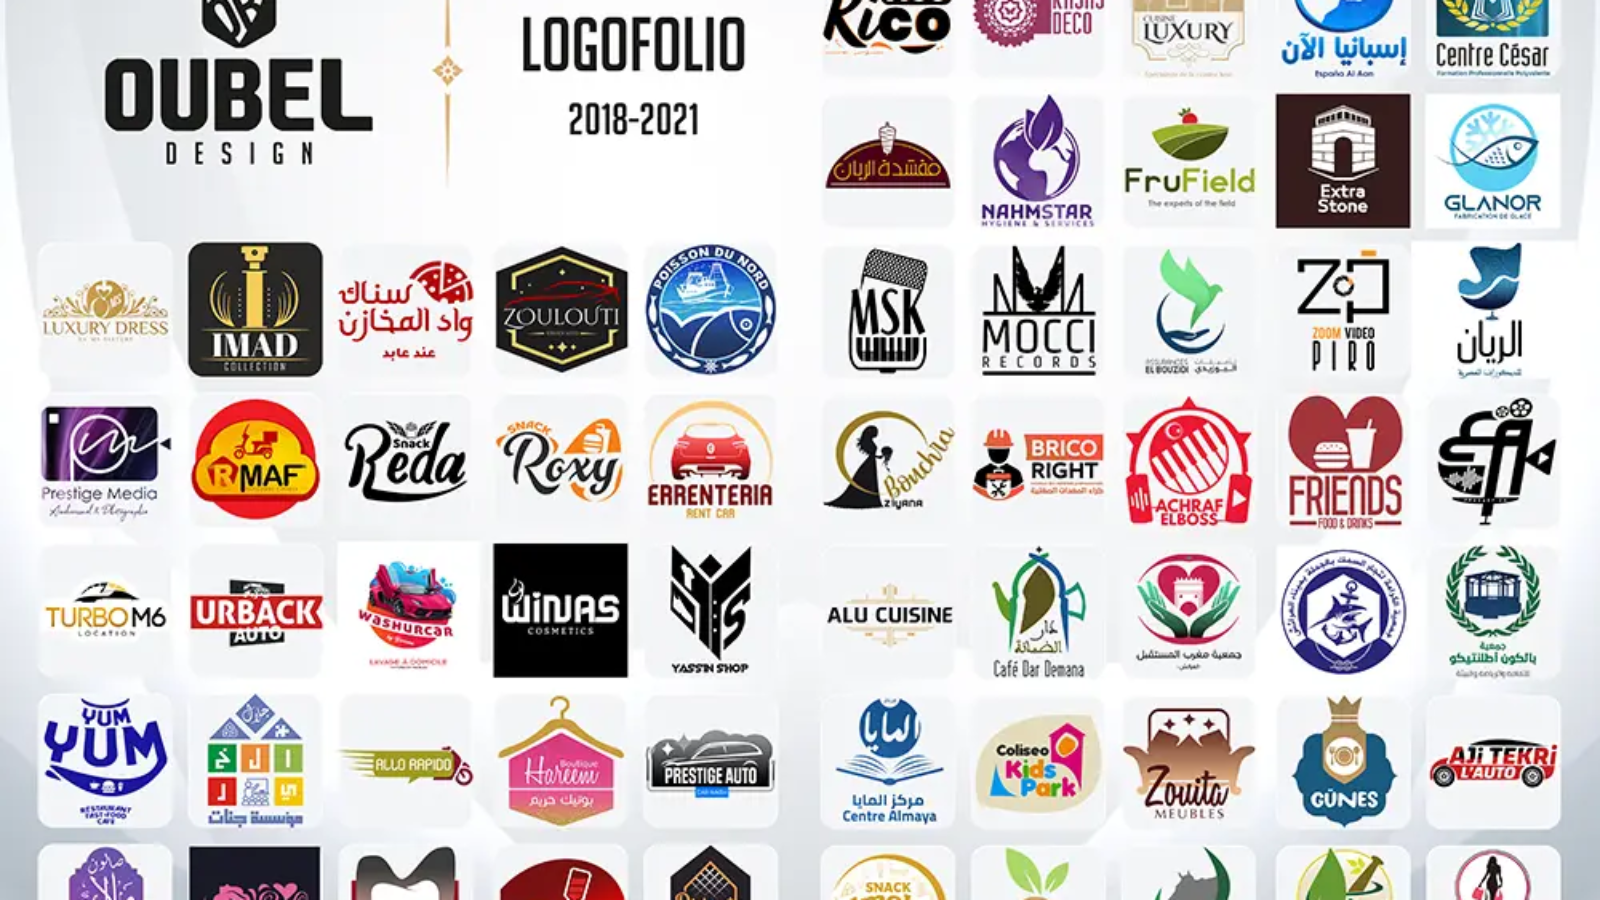 Logofolio 2018 2021 Oubel Design Logos